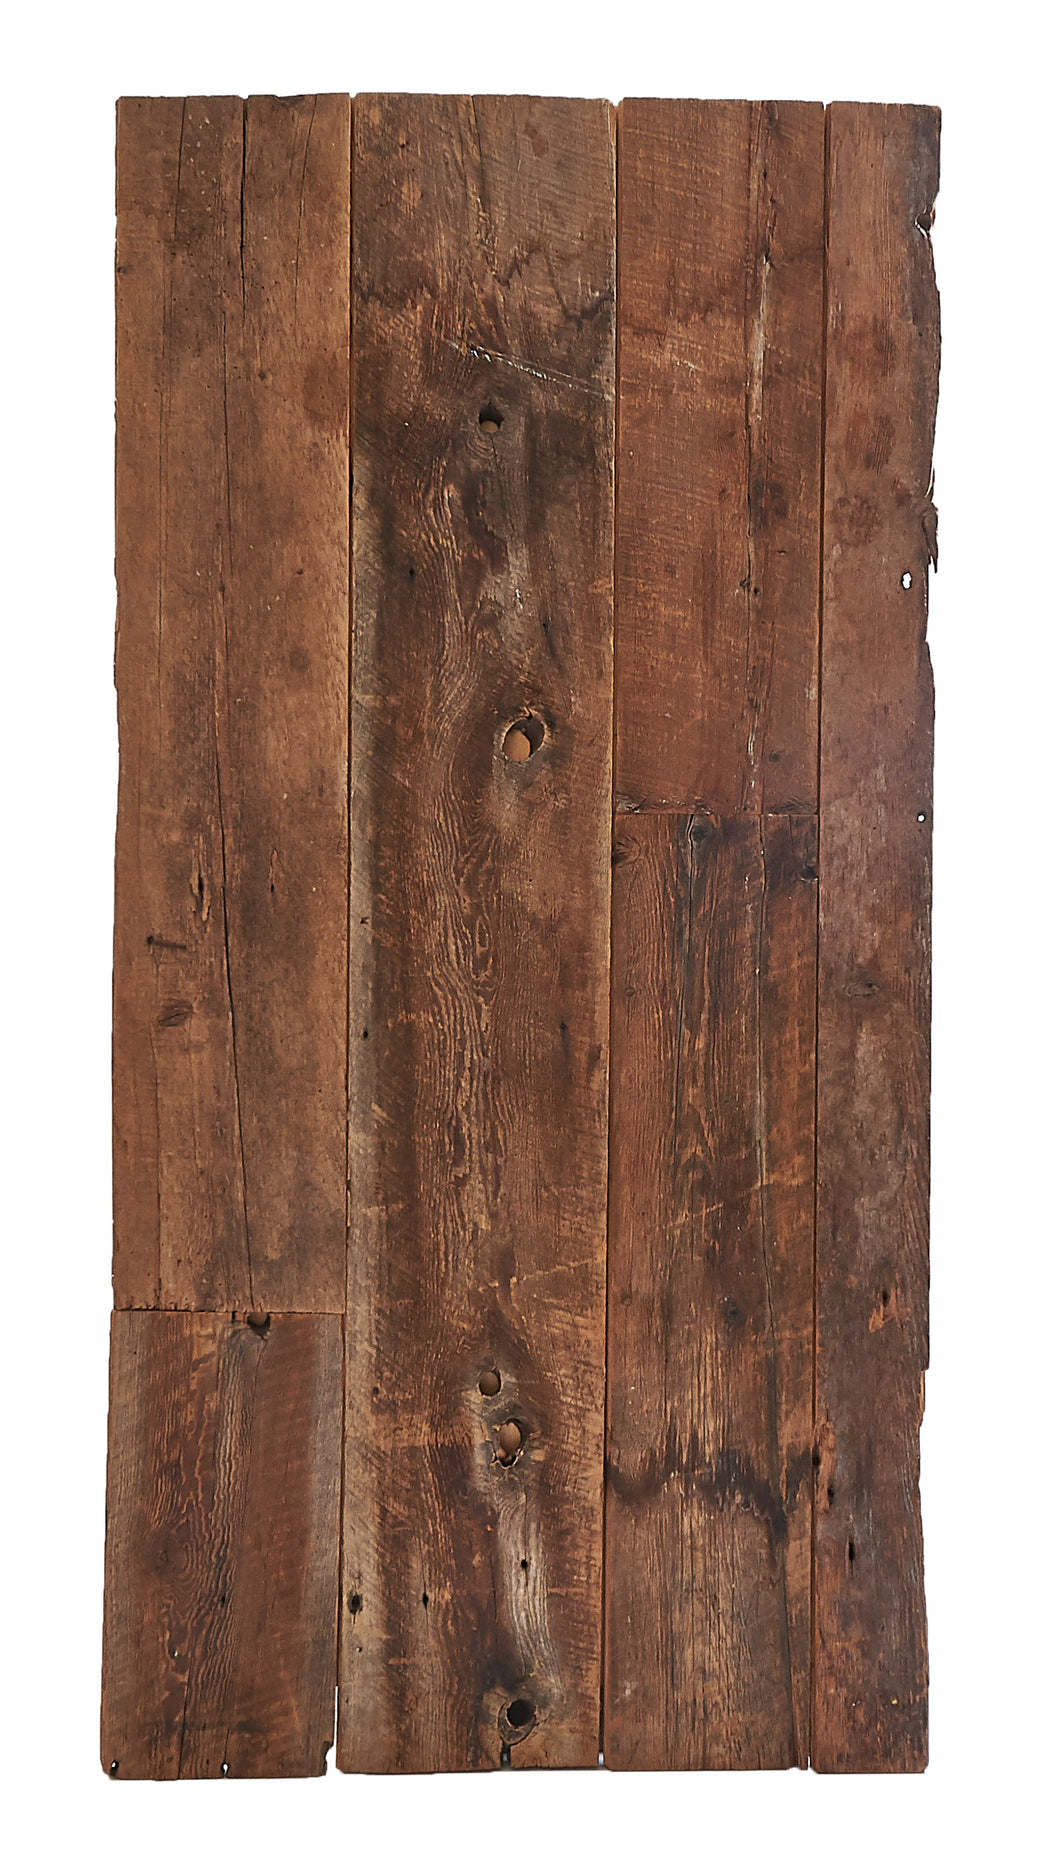 Lg Worn Wood Planks